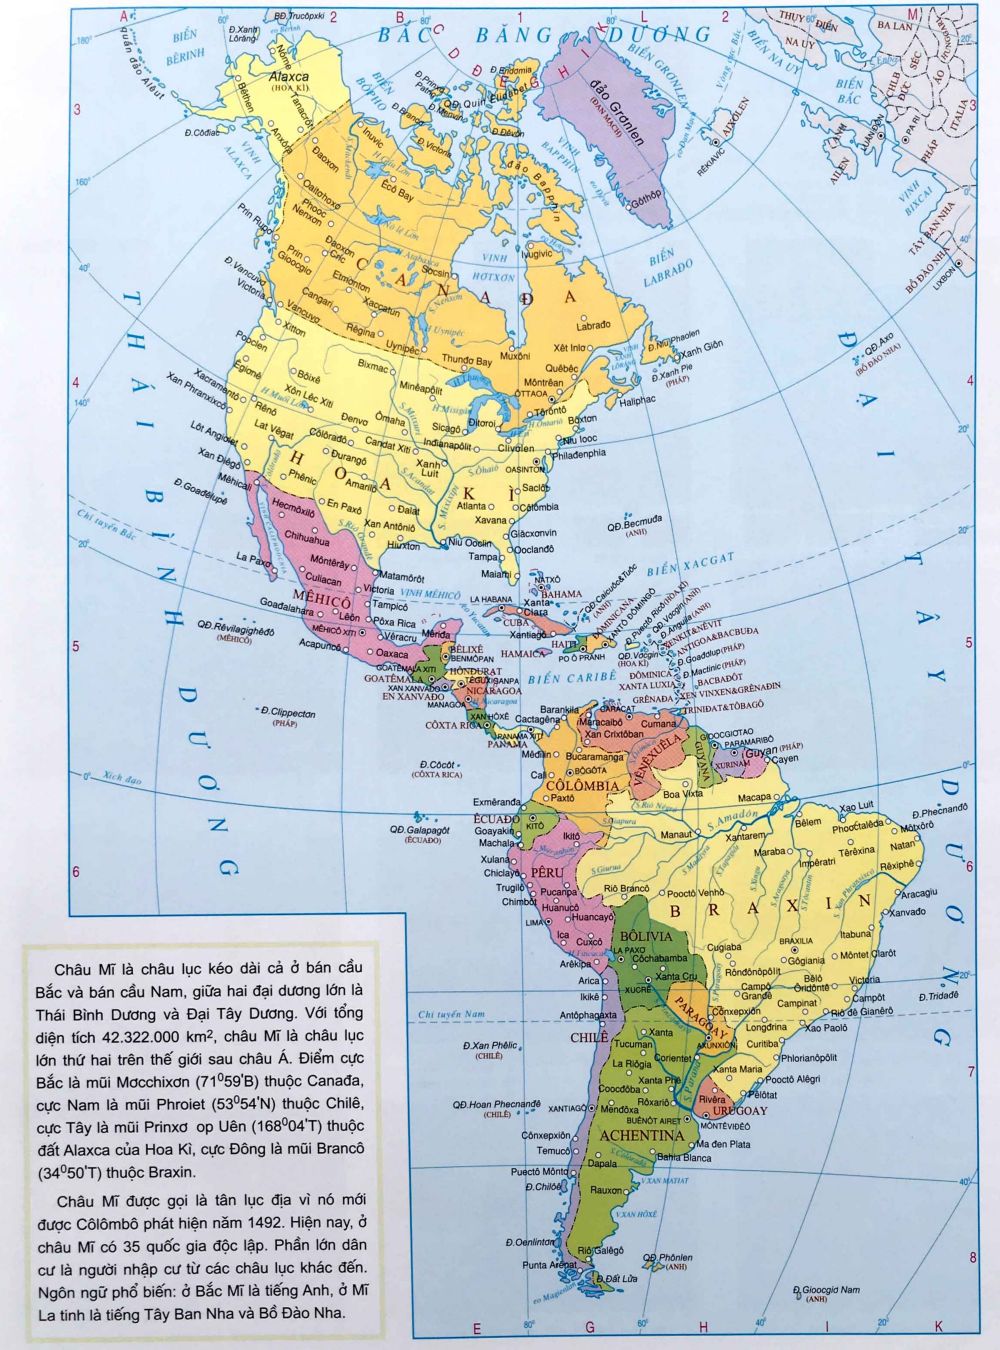 Tham gia cùng chúng tôi để khám phá vẻ đẹp của Bản đồ Các nước trên thế giới. Đây là cơ hội để bạn tìm hiểu về địa lý và văn hóa của những quốc gia khác nhau trên khắp thế giới.